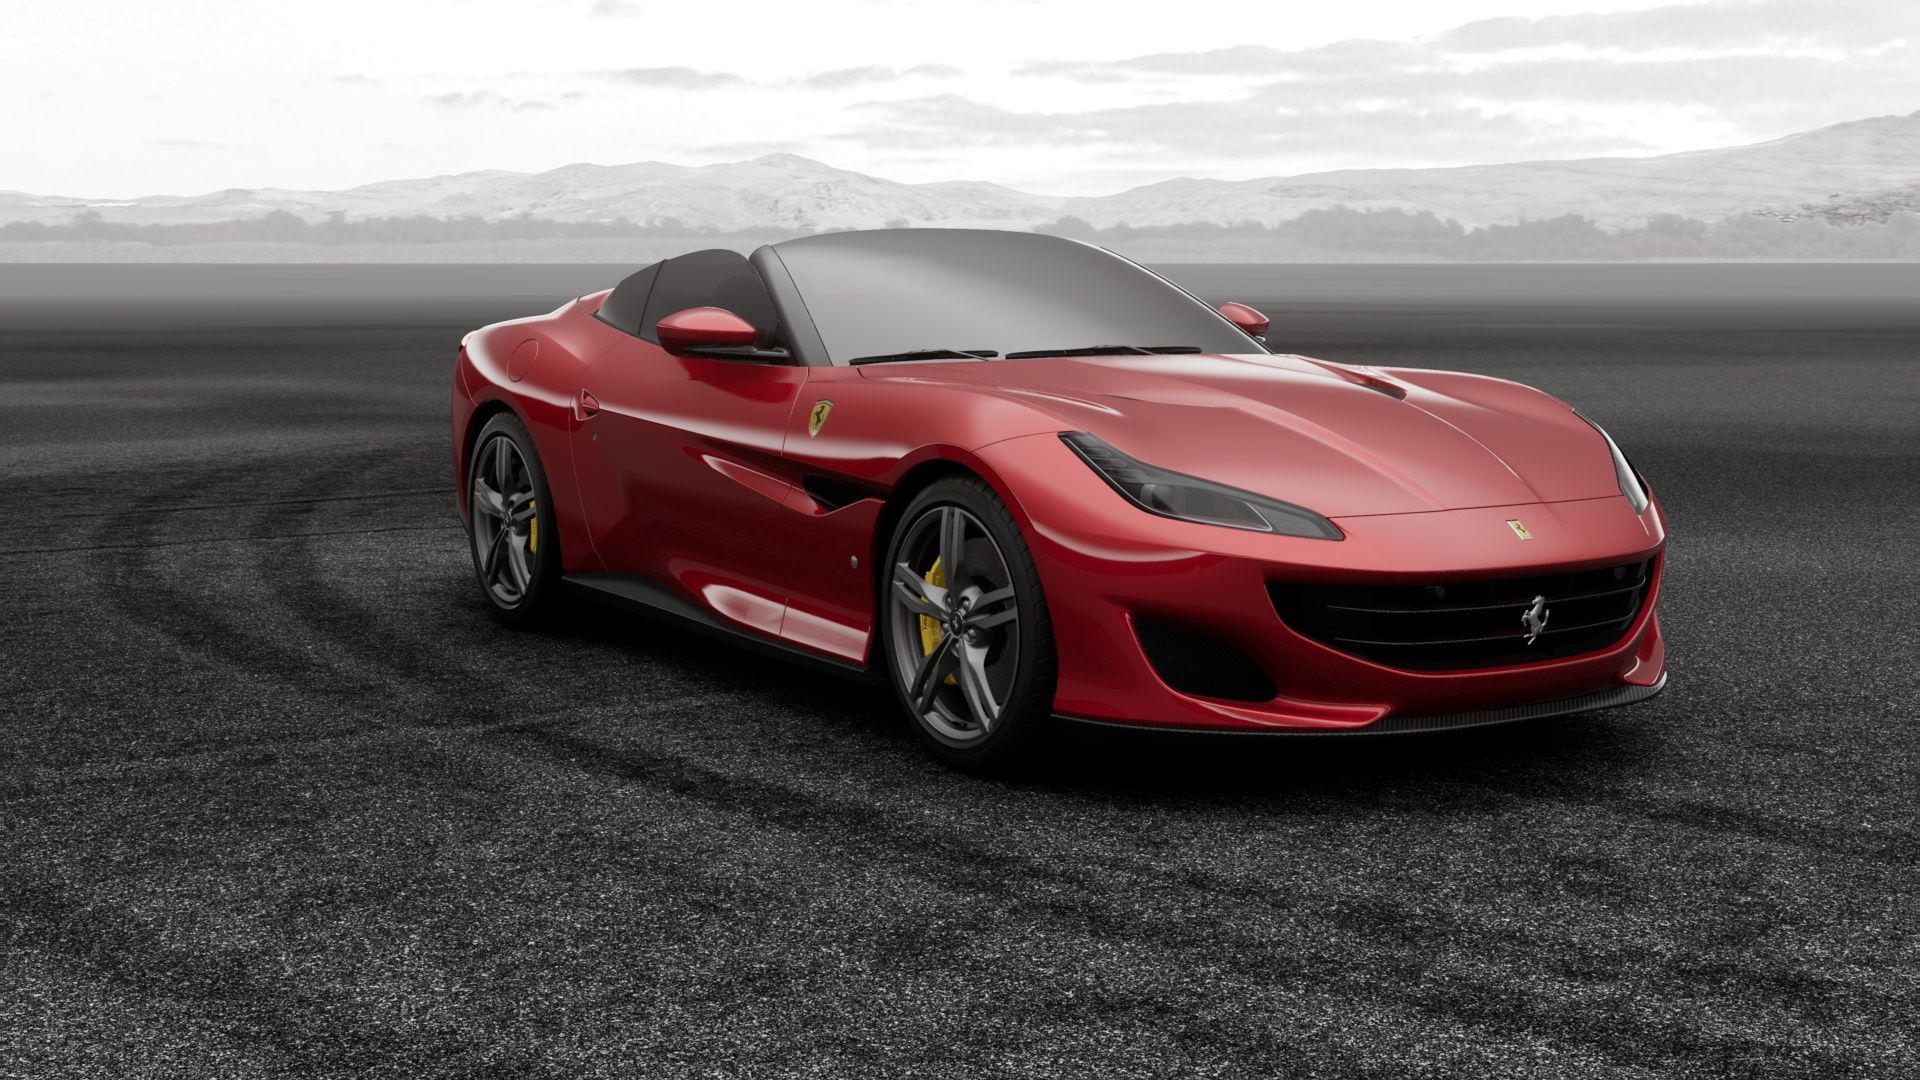 This is my Ferrari Portofino! Build your own #Ferrari #portofino down to the last detail. Ferrari, Portofino, Ferrari car